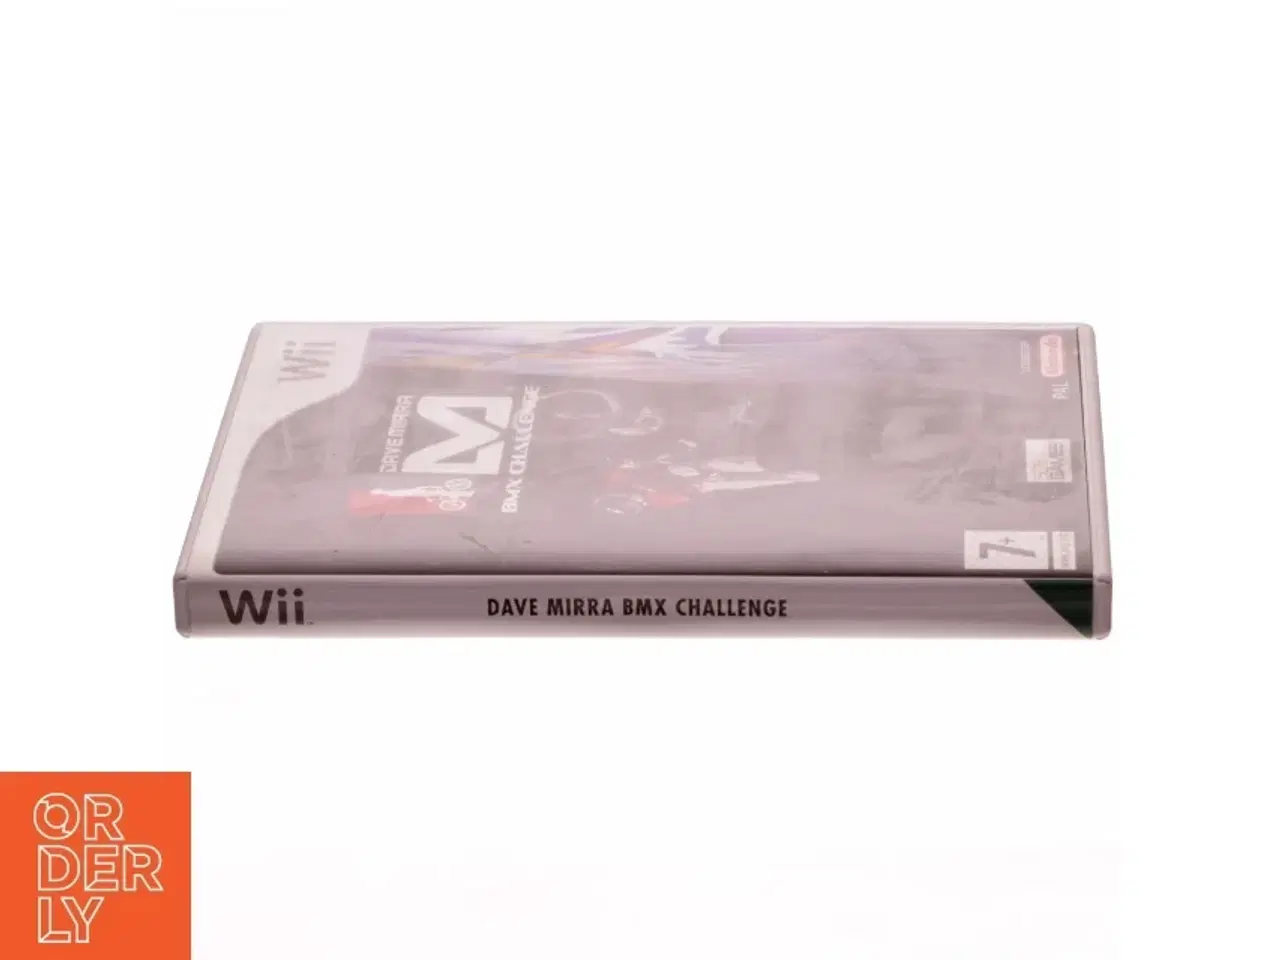 Billede 2 - Dave Mirra BMX Challenge Wii spil fra Nintendo